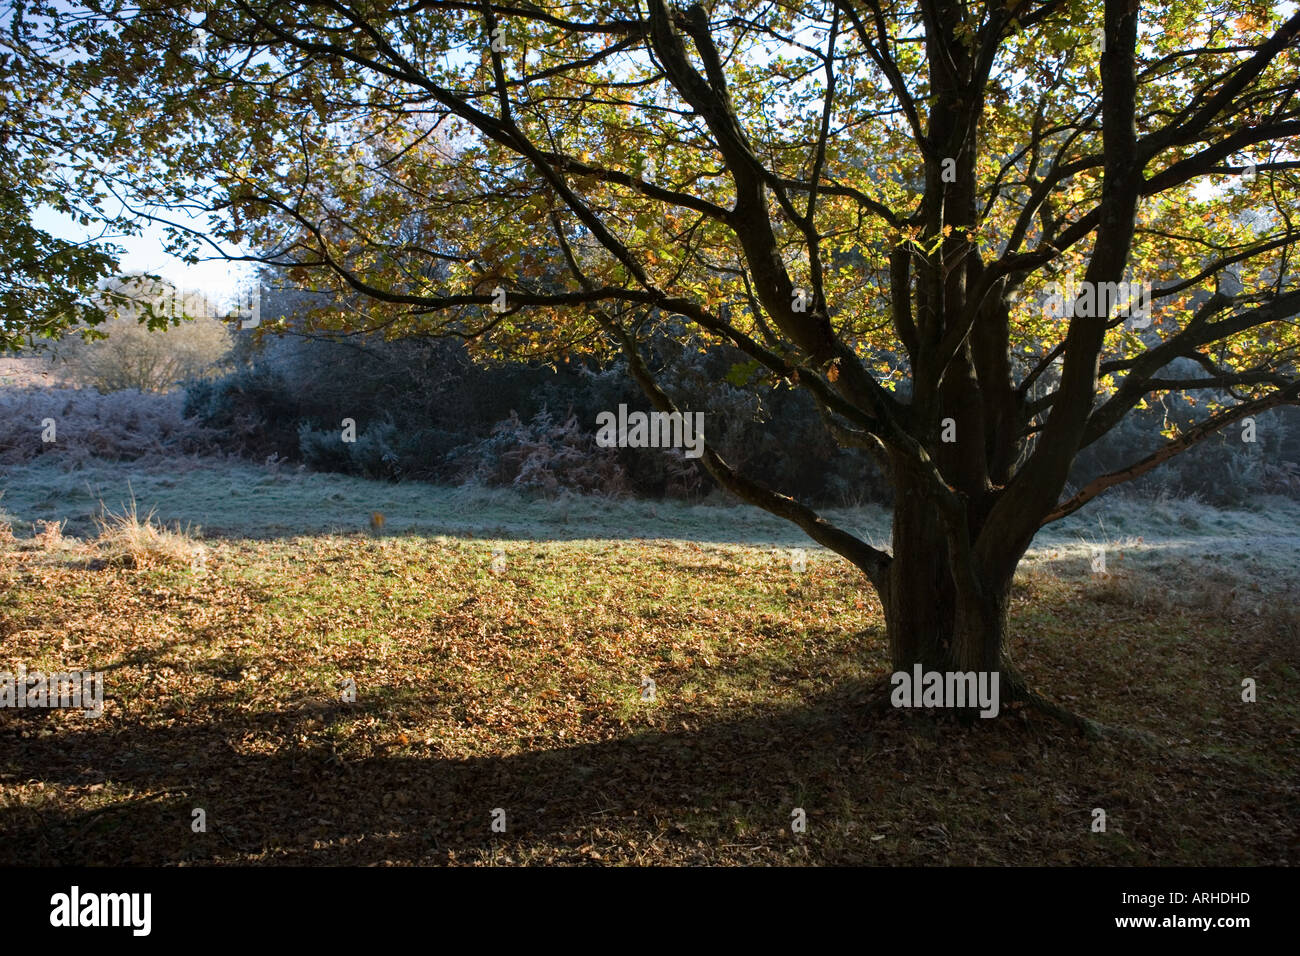 Nome comune: il bosco - Quercia nome latino: Quercus Foto Stock